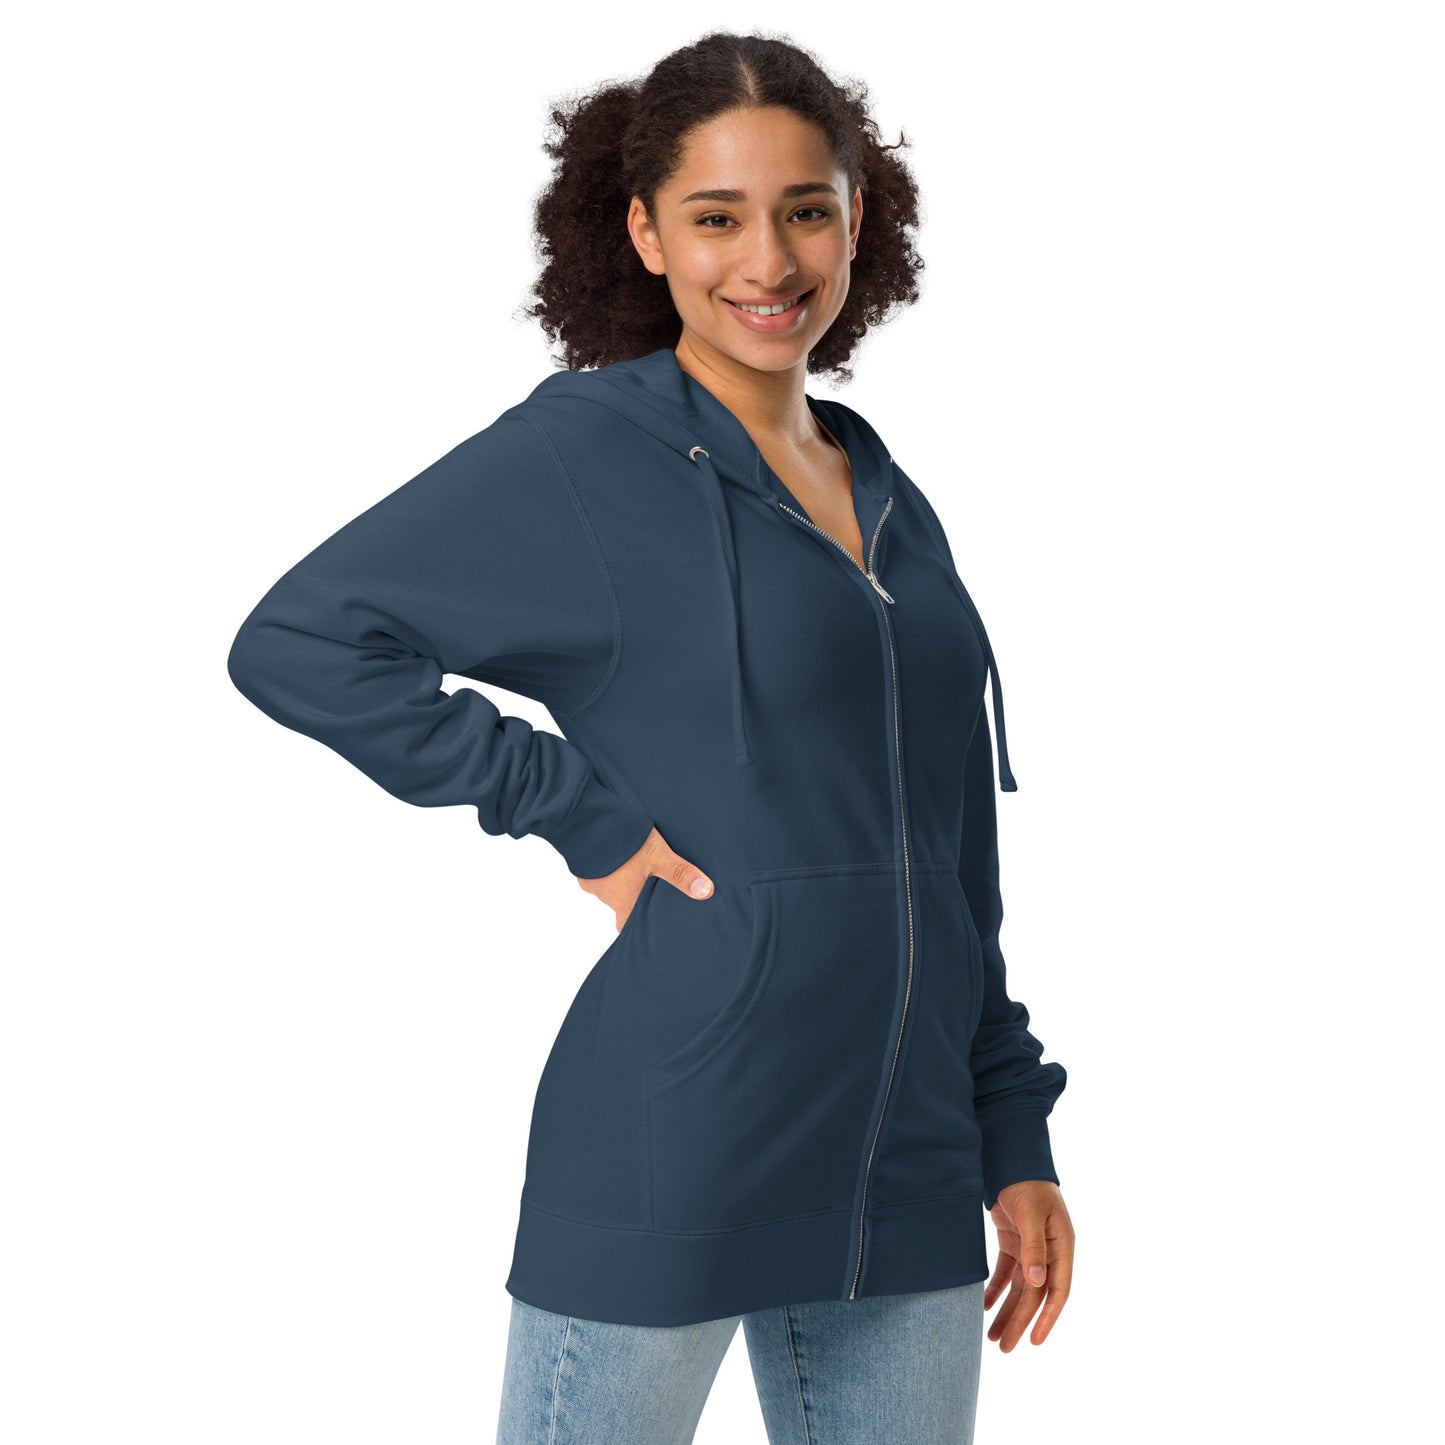 Dandelion wish design front of navy blue fleece zip up hoodie shown on female model